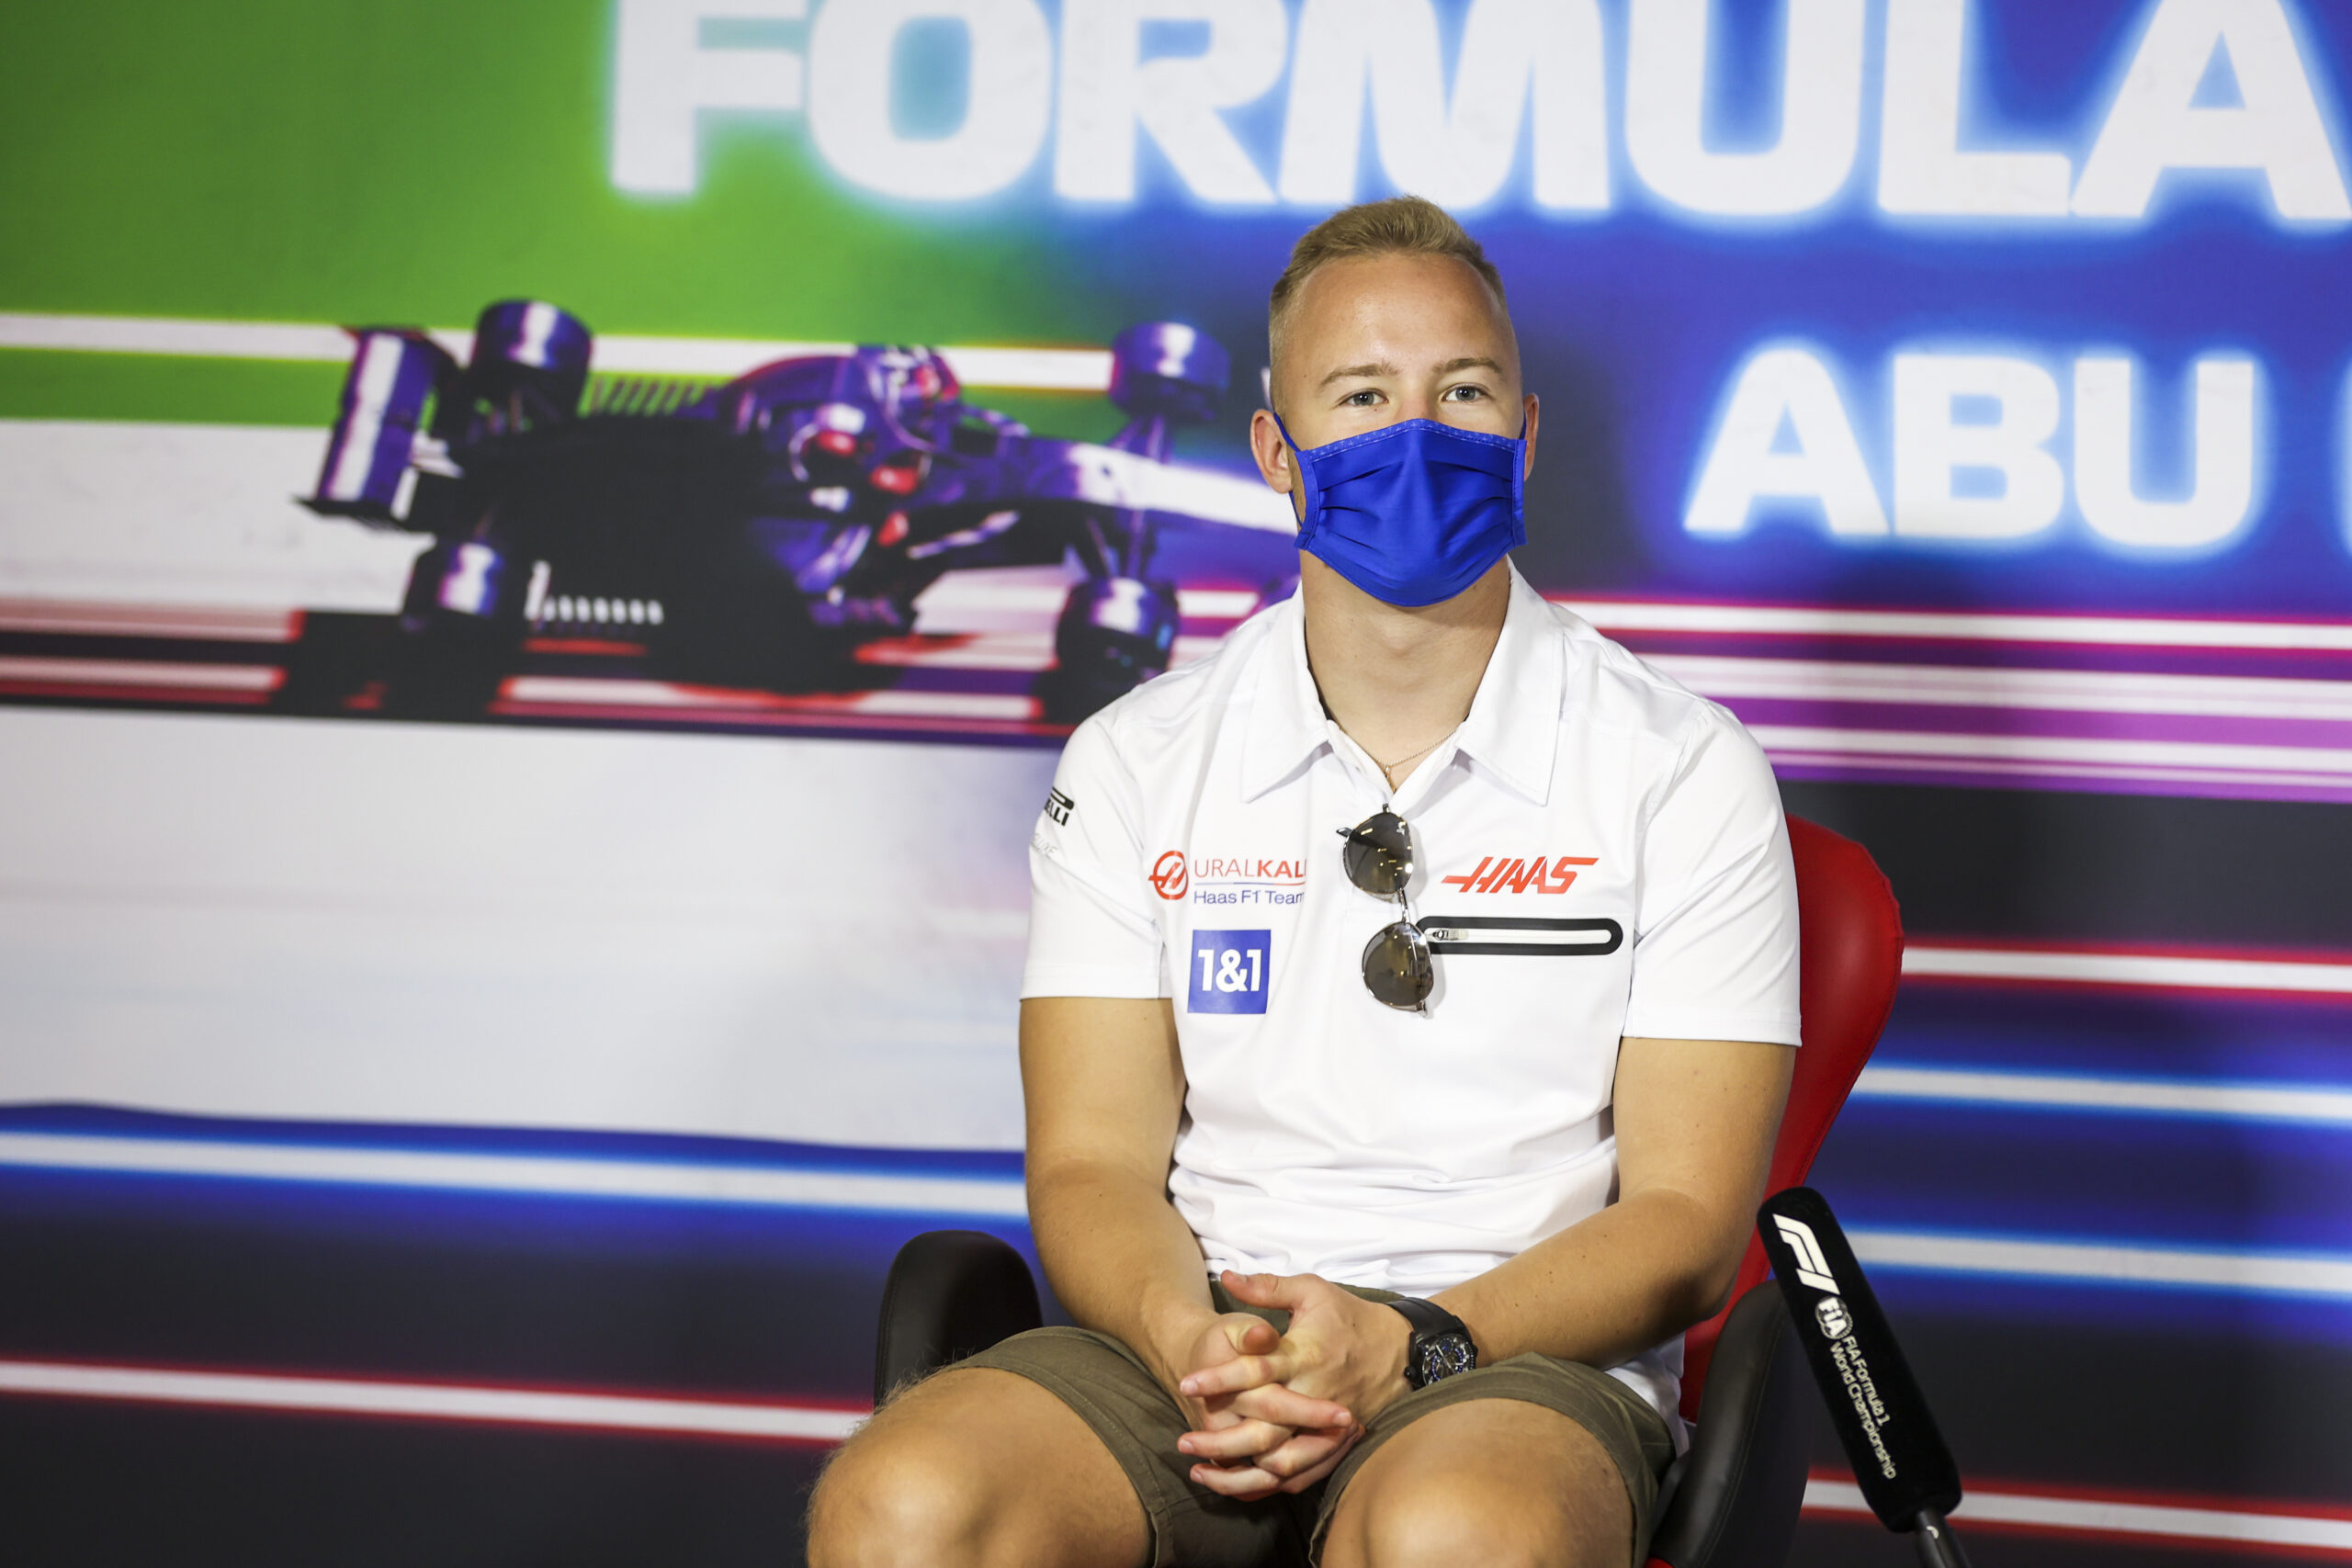 Mazepin vai correr com bandeira neutra na F1 por conta de punição